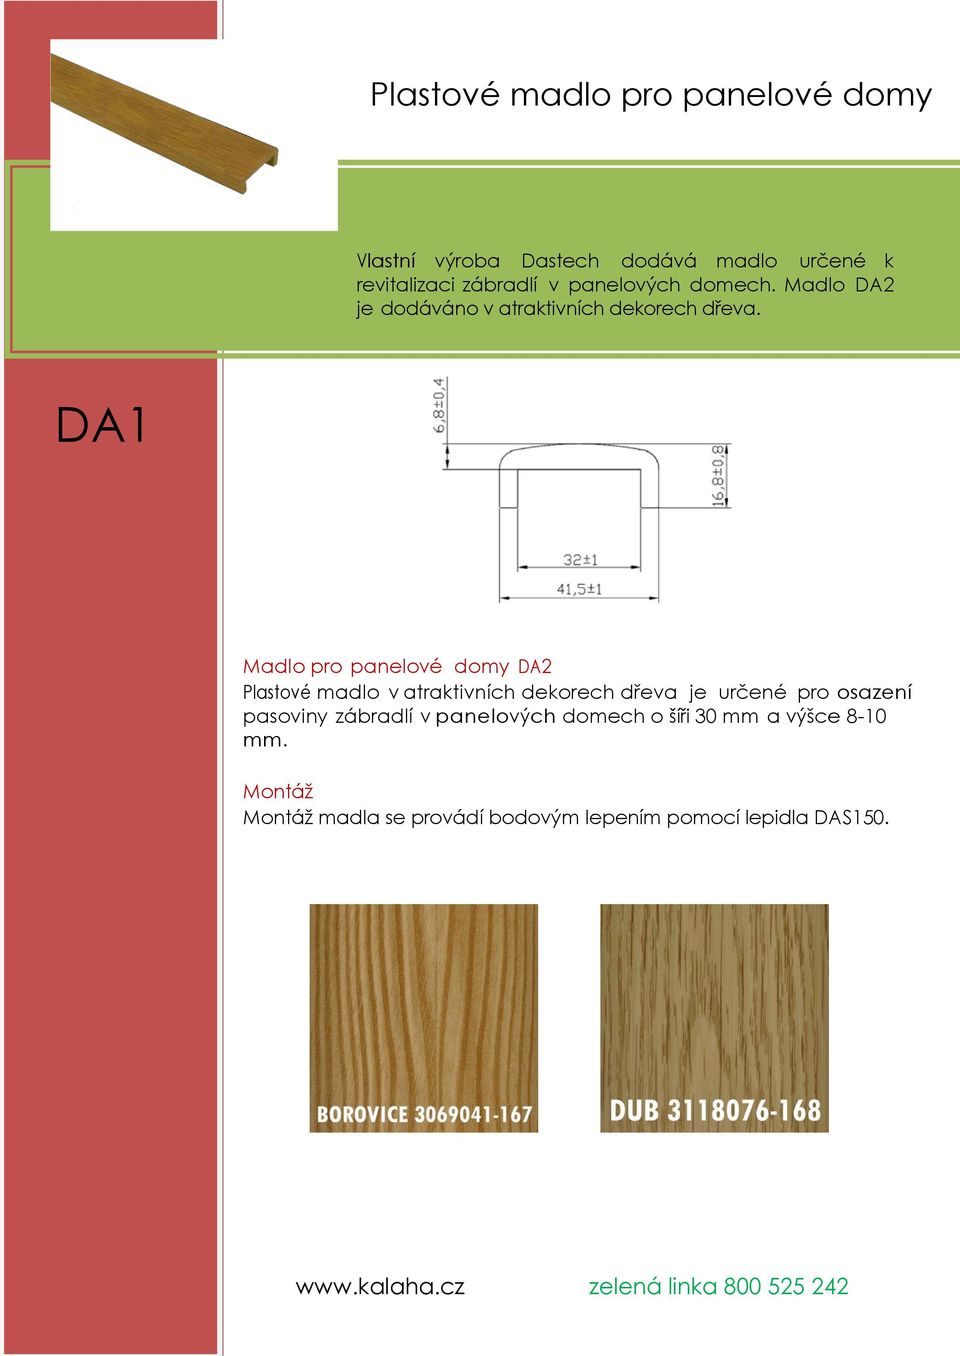 DA1 Madlo pro panelové domy DA2 Plastové madlo v atraktivních dekorech dřeva je určené pro osazení pasoviny zábradlí v